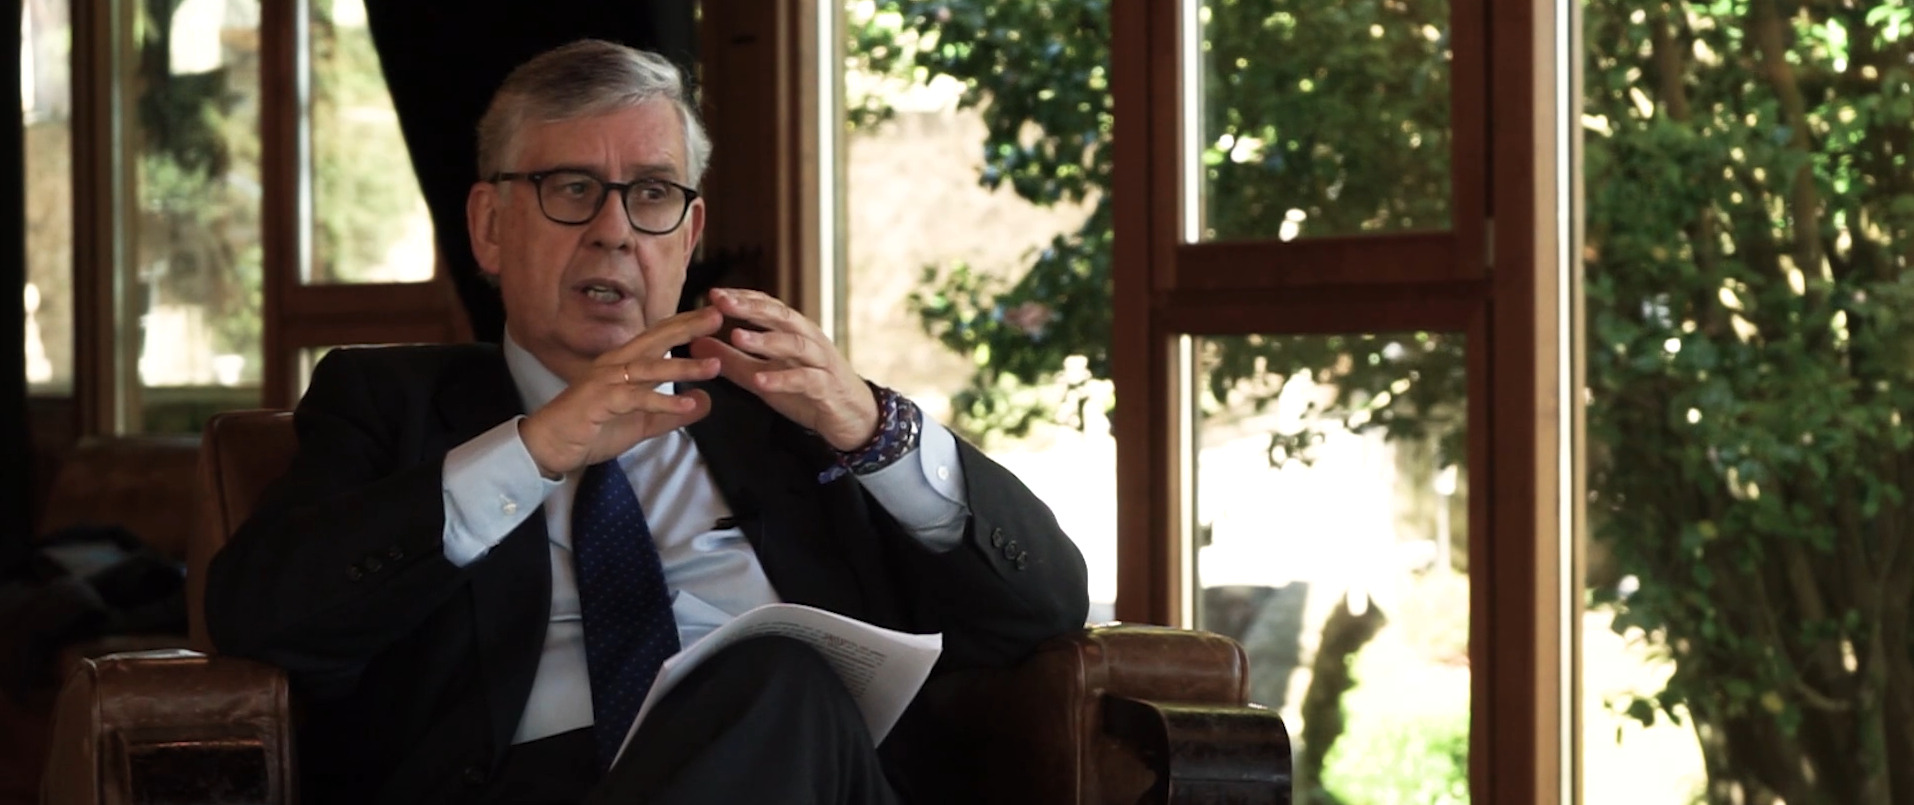 Juan Manuel Vieites, presidente de la Confederación de Empresarios de Galicia, durante la entrevista en los Observatorios de ED Galicia